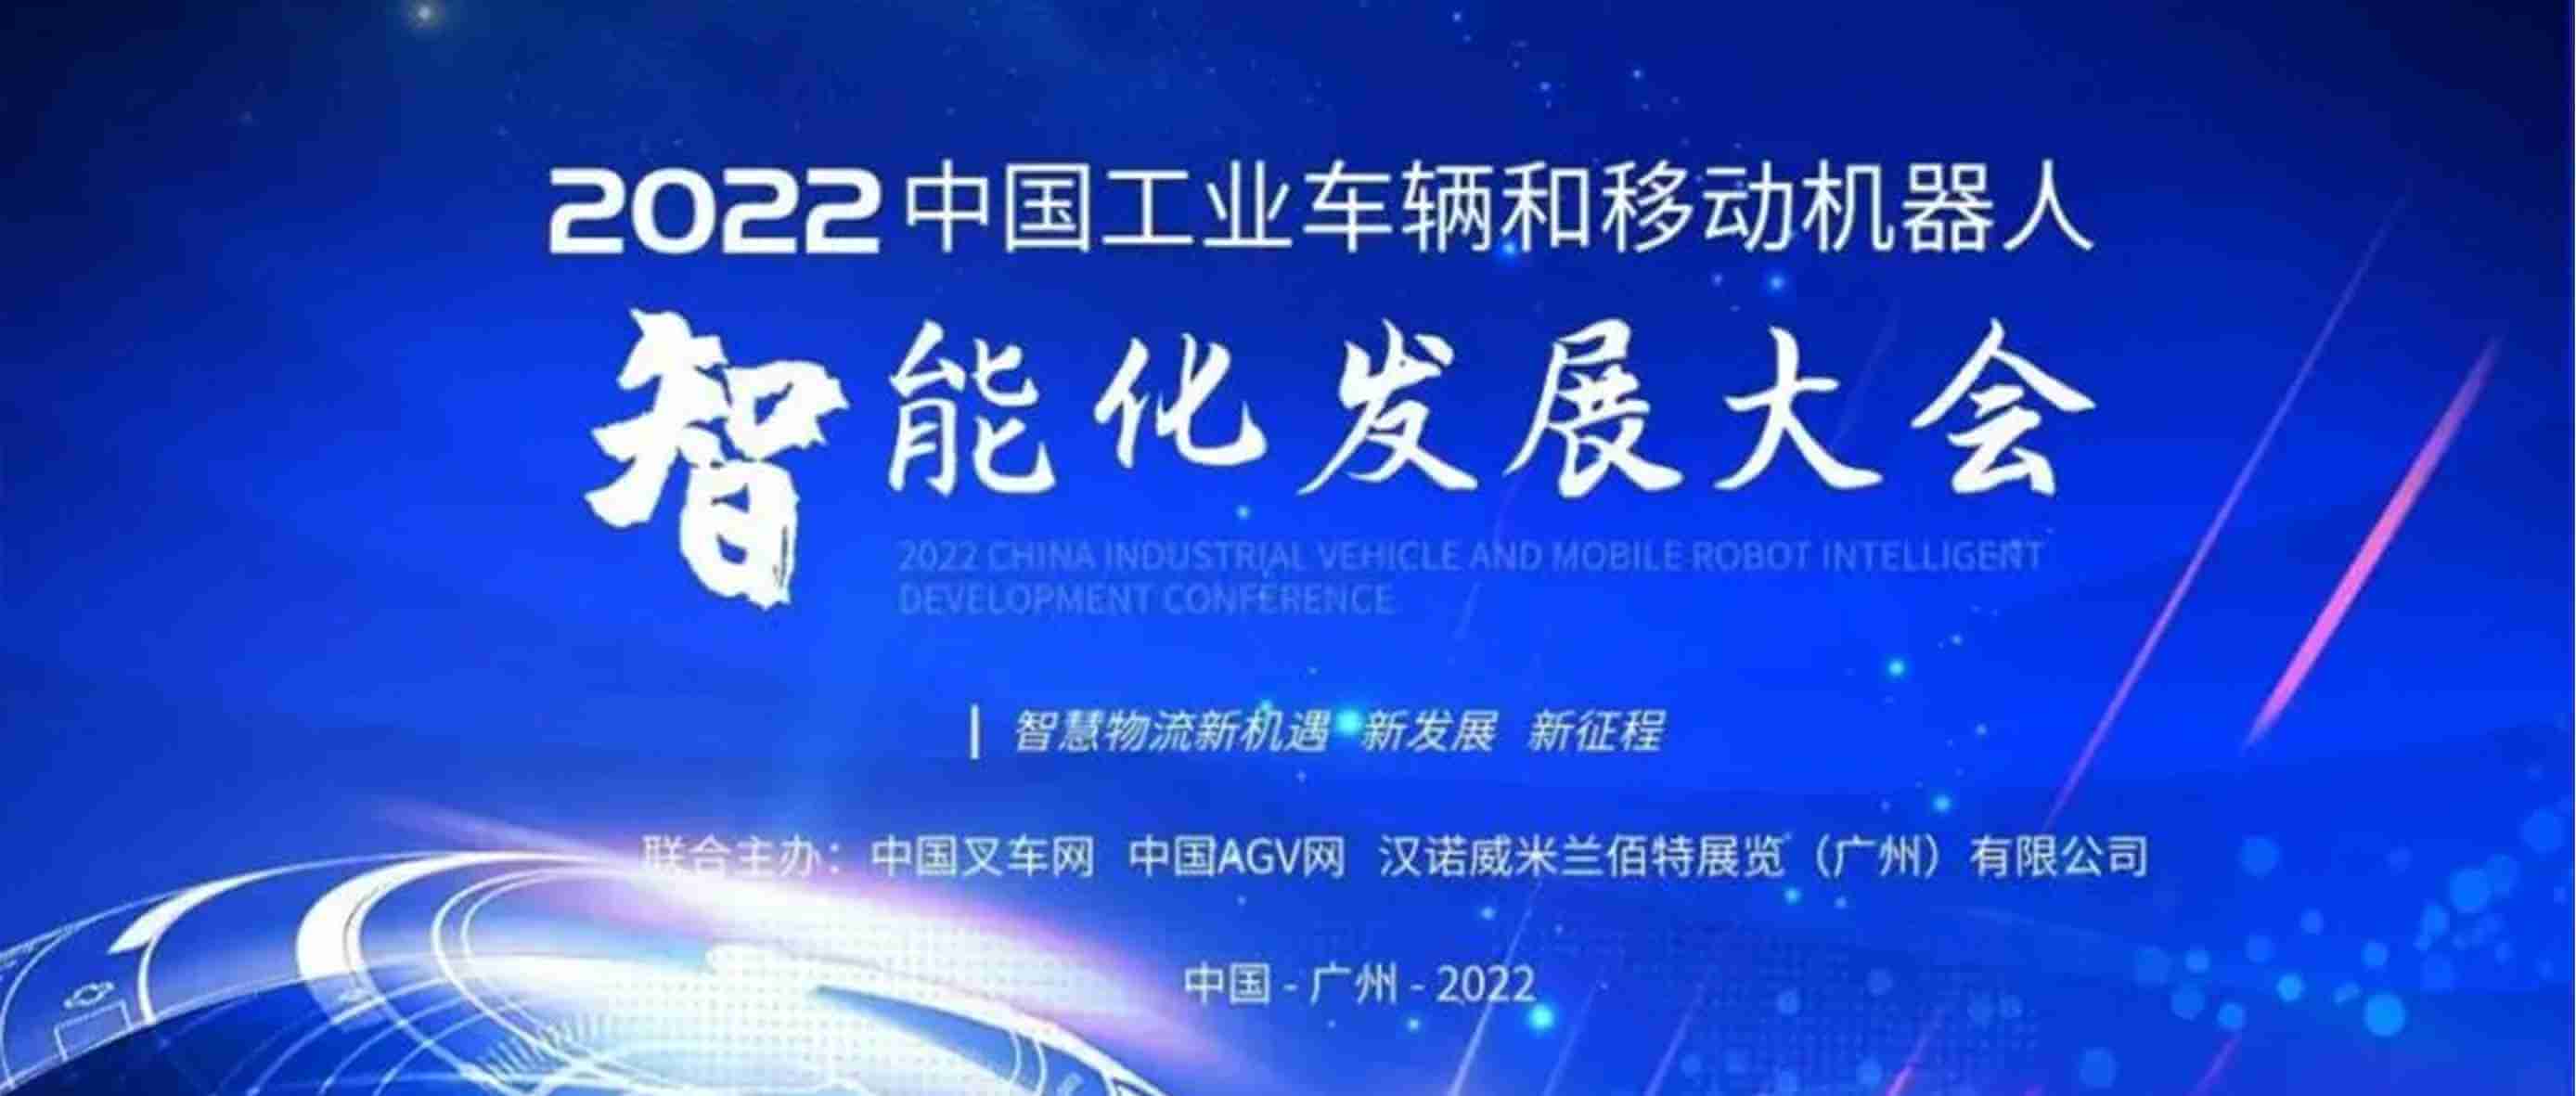 维感科技荣获2022中国工业车辆和移动机器人智能化发展大会暨“金力奖”优秀供应链奖